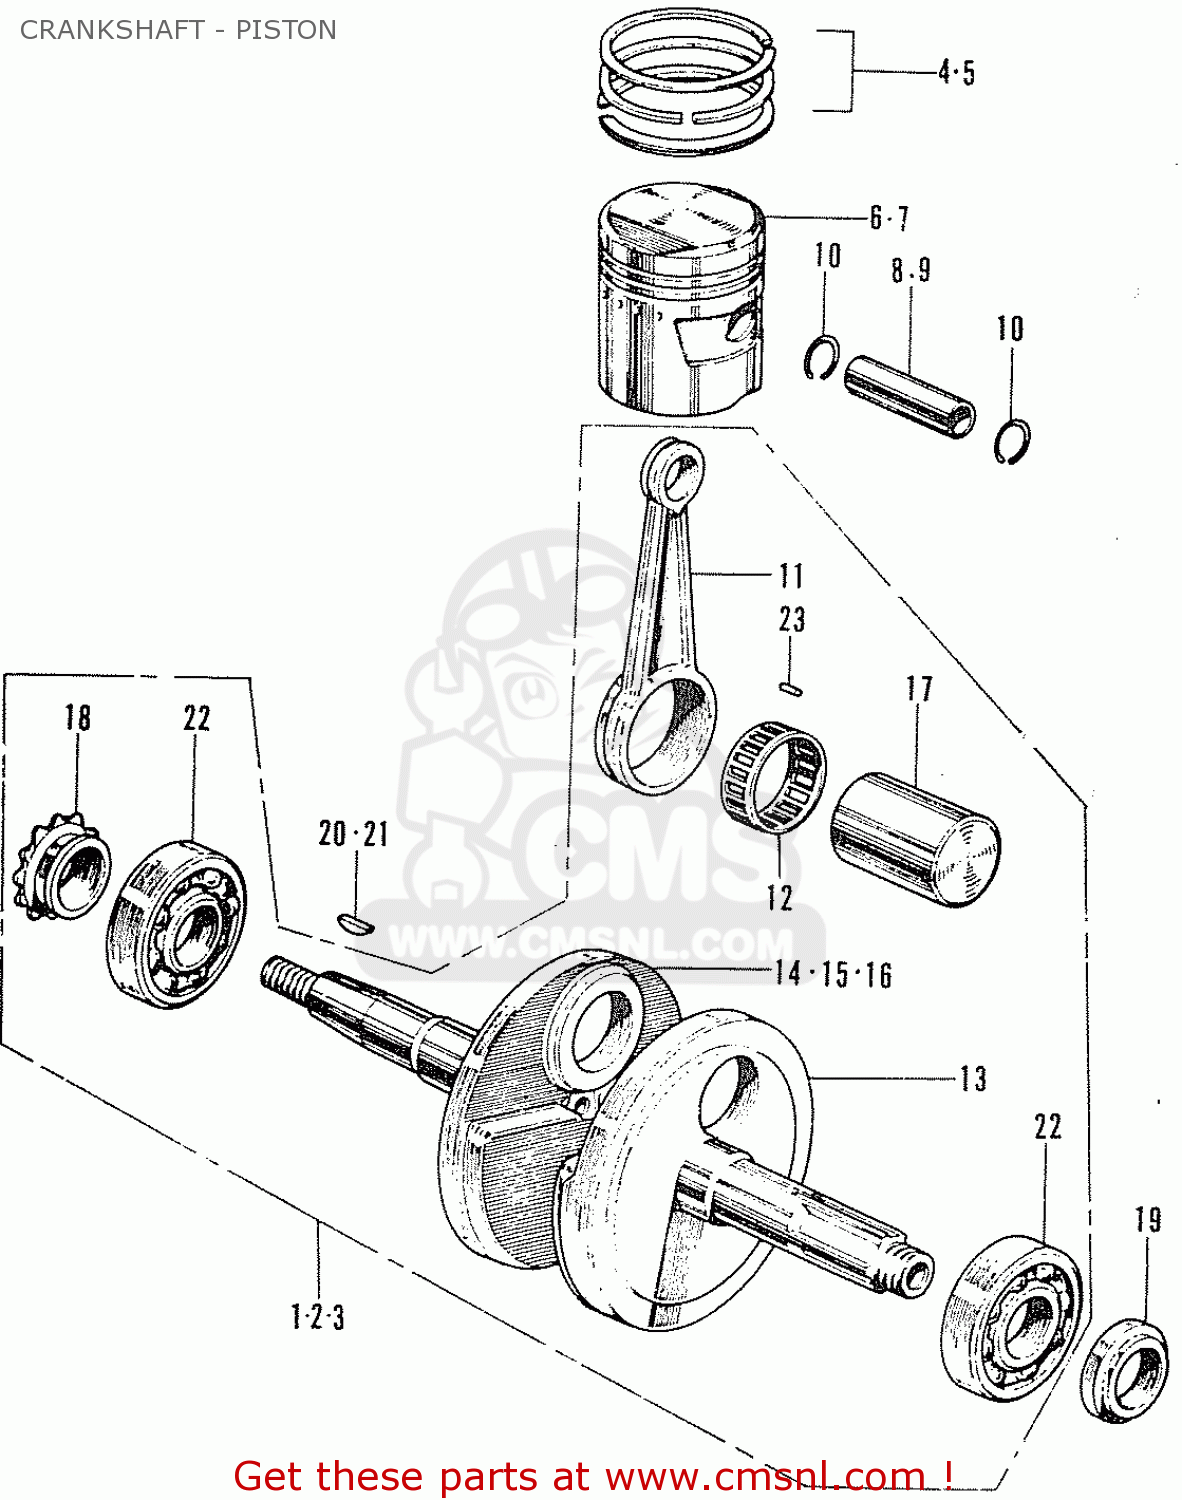 Honda C50 (england) Crankshaft - Piston - schematic partsfiche